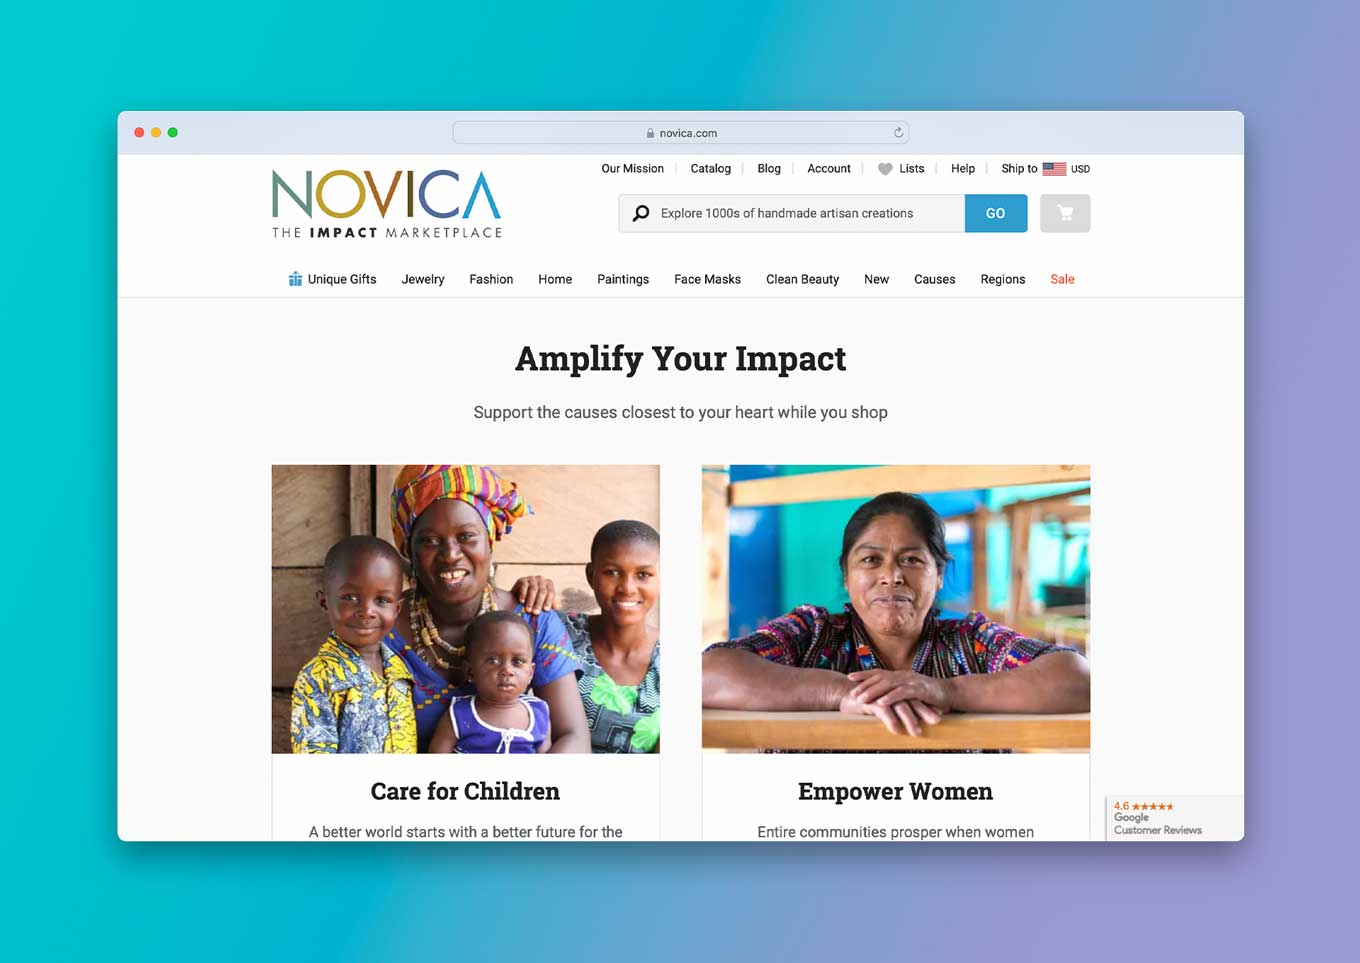 WEBSITE VAN NOVICA: "De impactmarktplaats" en "Versterk uw impact: ondersteun de doelen die het dichtst bij uw hart liggen terwijl u winkelt" 